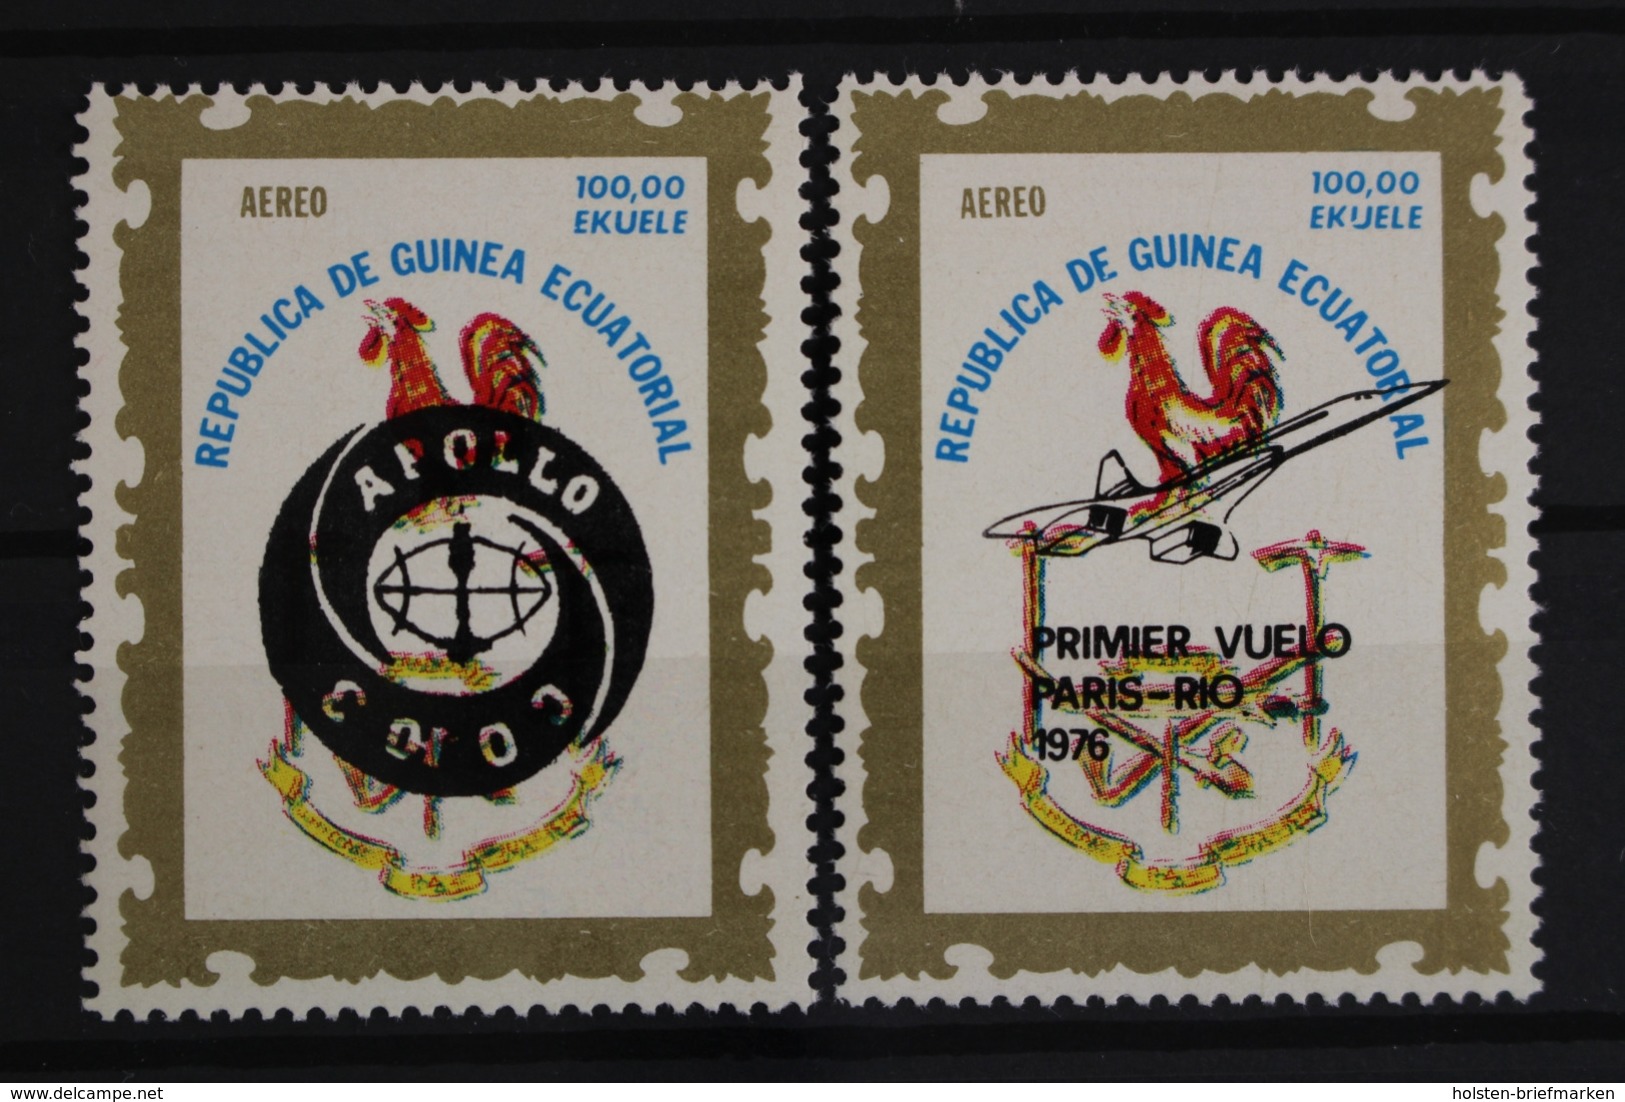 Äquatorialguinea, MiNr. 837-838 I, Postfrisch / MNH - Äquatorial-Guinea